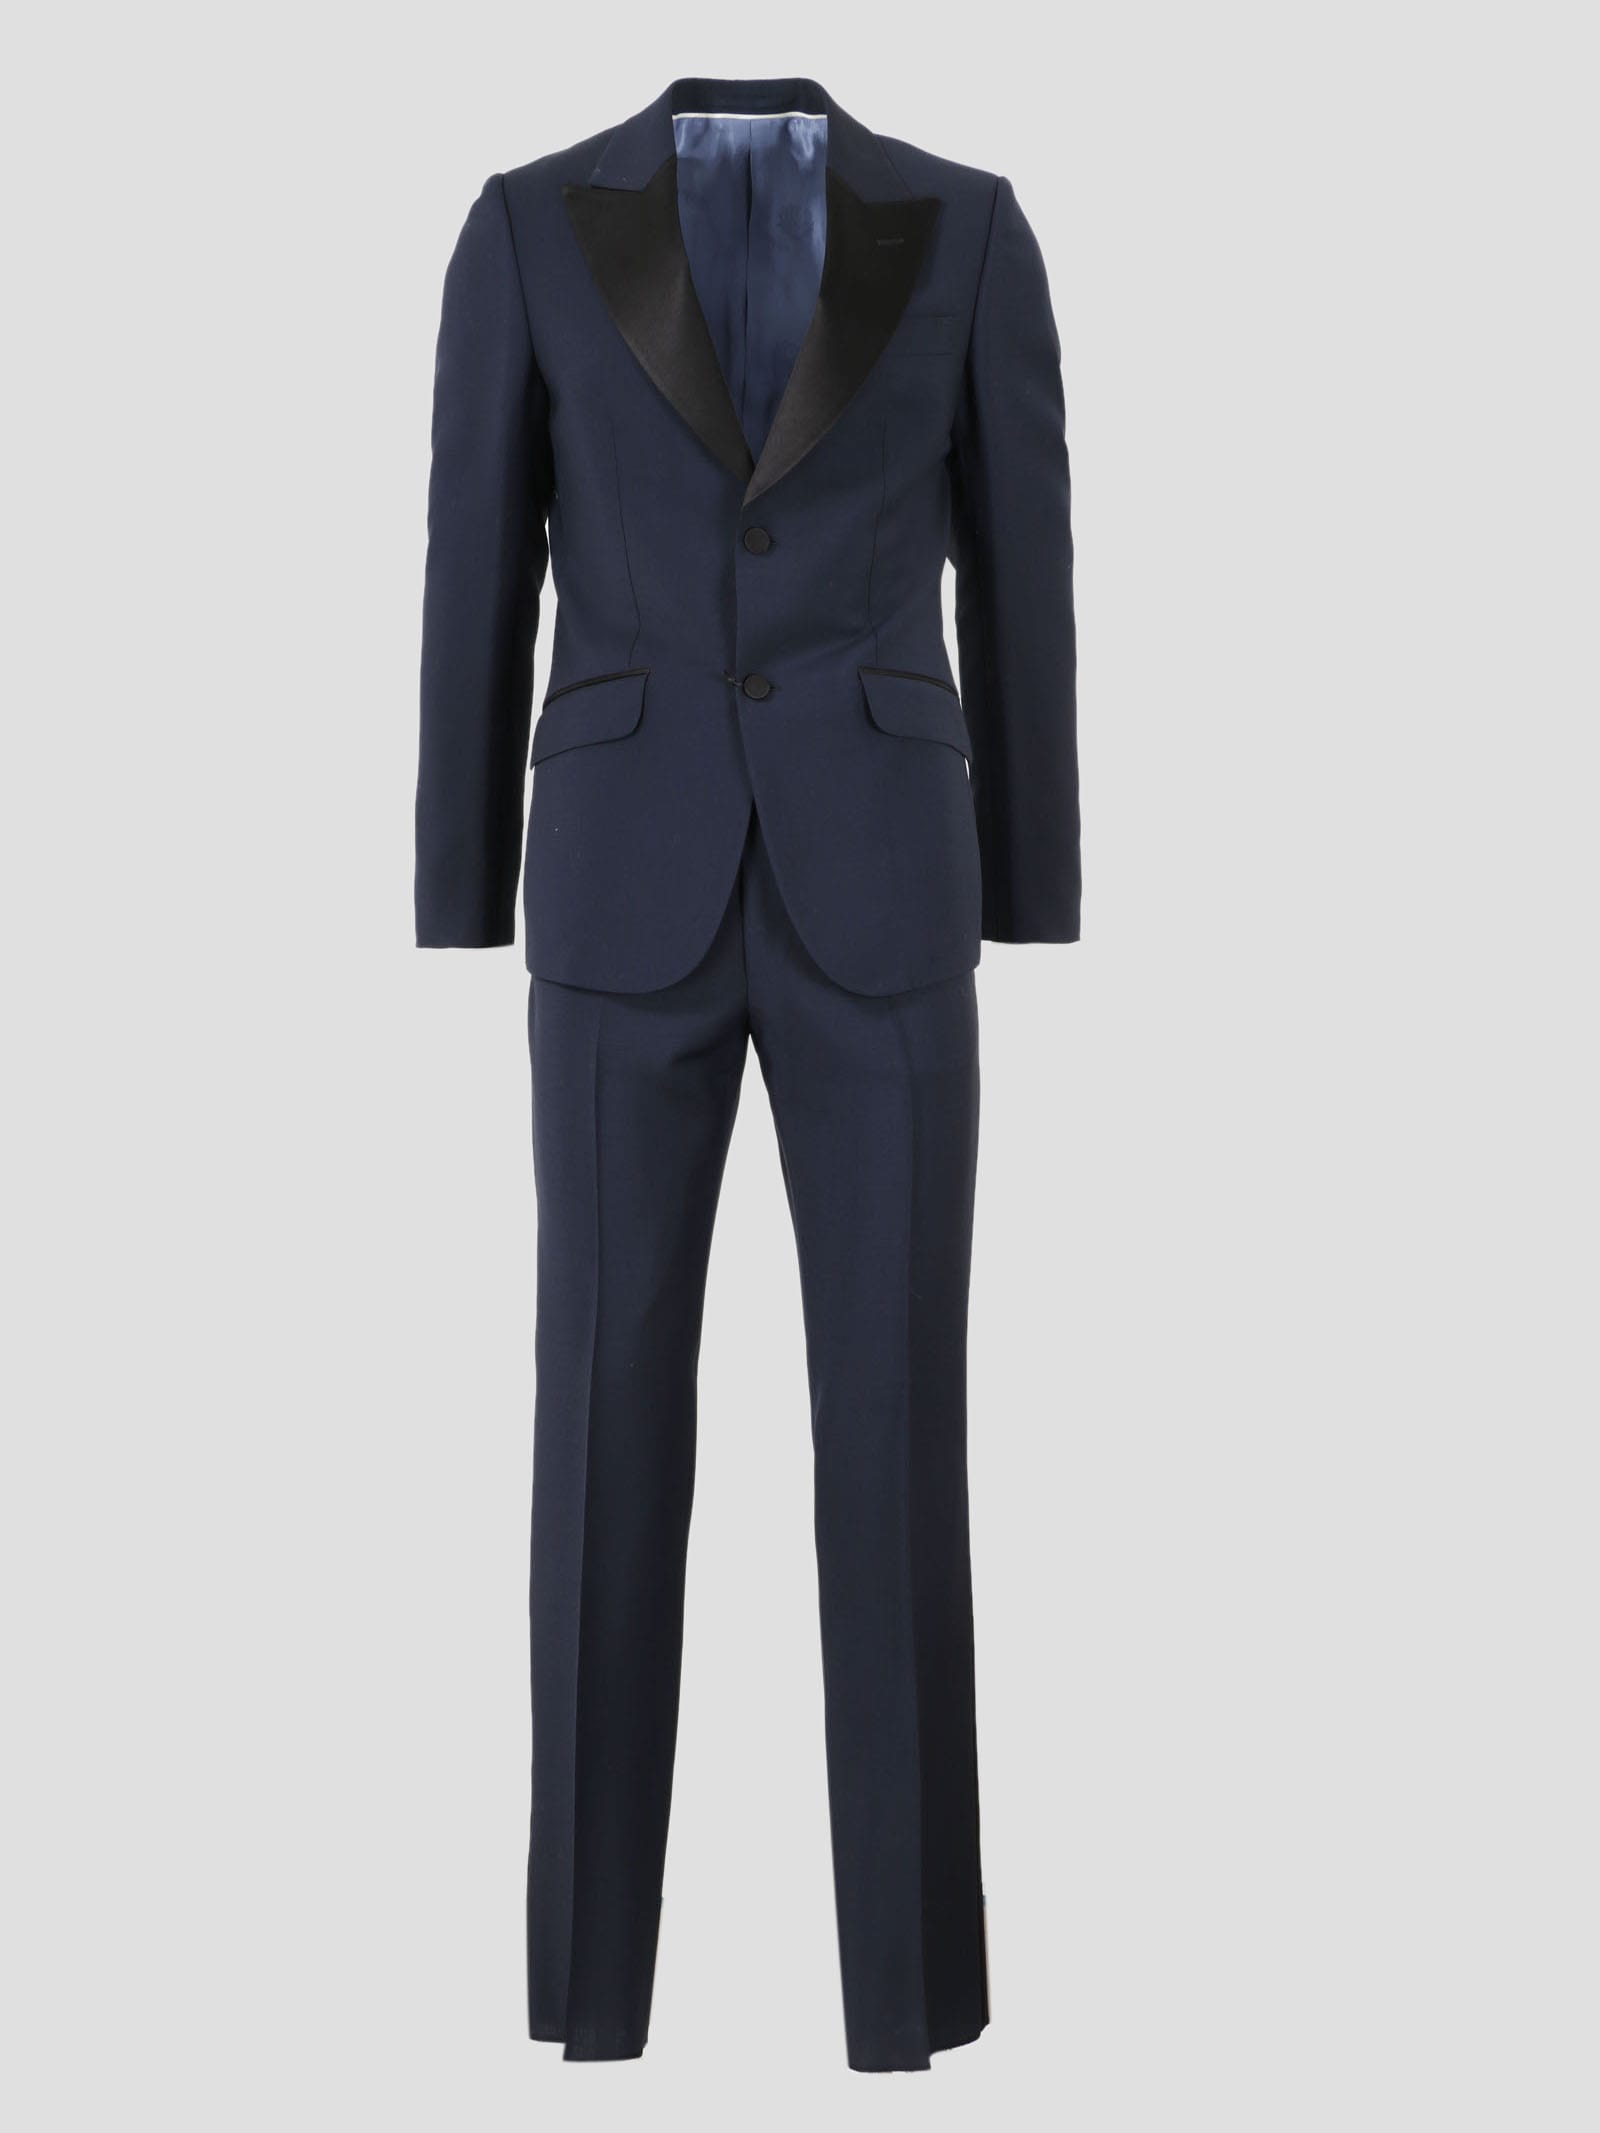 Gucci Tuxedo Suit